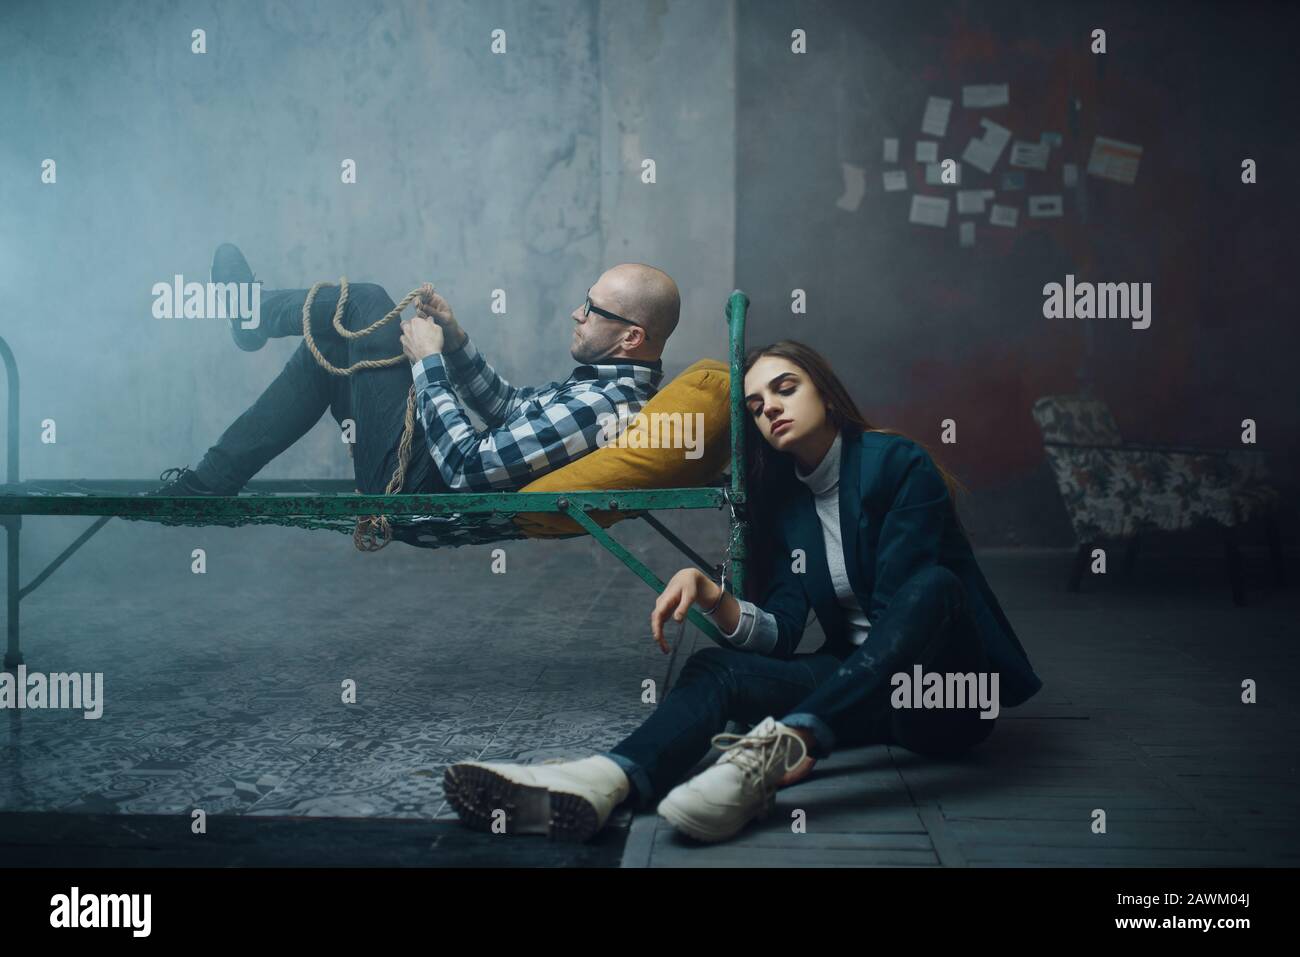 Maniak-Entführer und Geisel mit Handschellen ans Bett gefesselt  Stockfotografie - Alamy